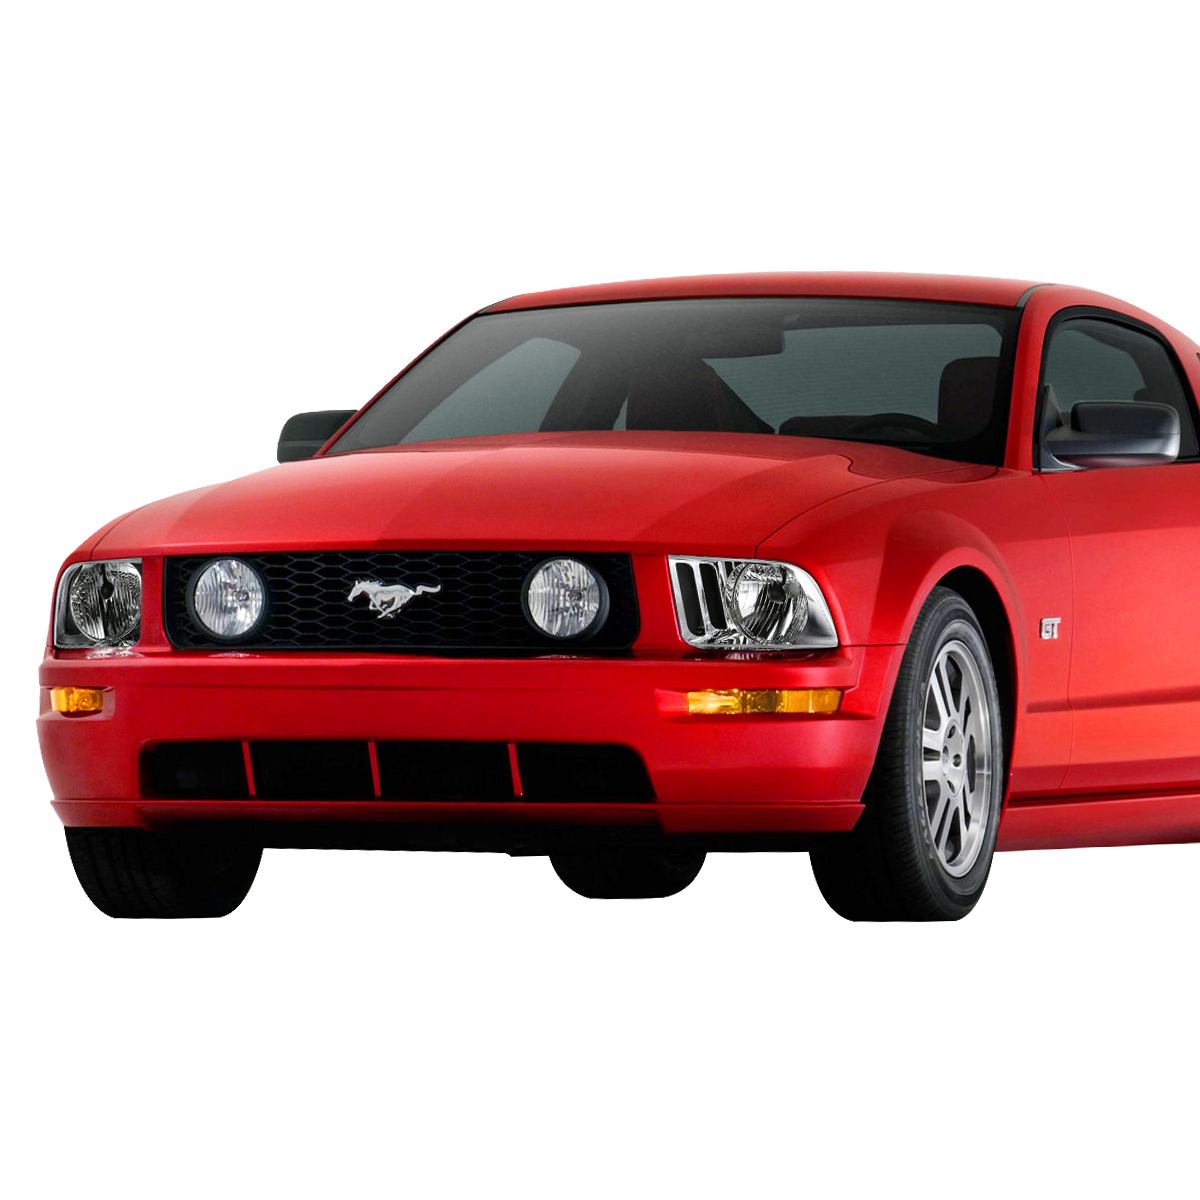 [ внутренний наличие / хром / оригинальный модель ]05-09y Ford Mustang передняя фара левый правый SET лампа передний бампер маркер (габарит) боковой металлизированный OE